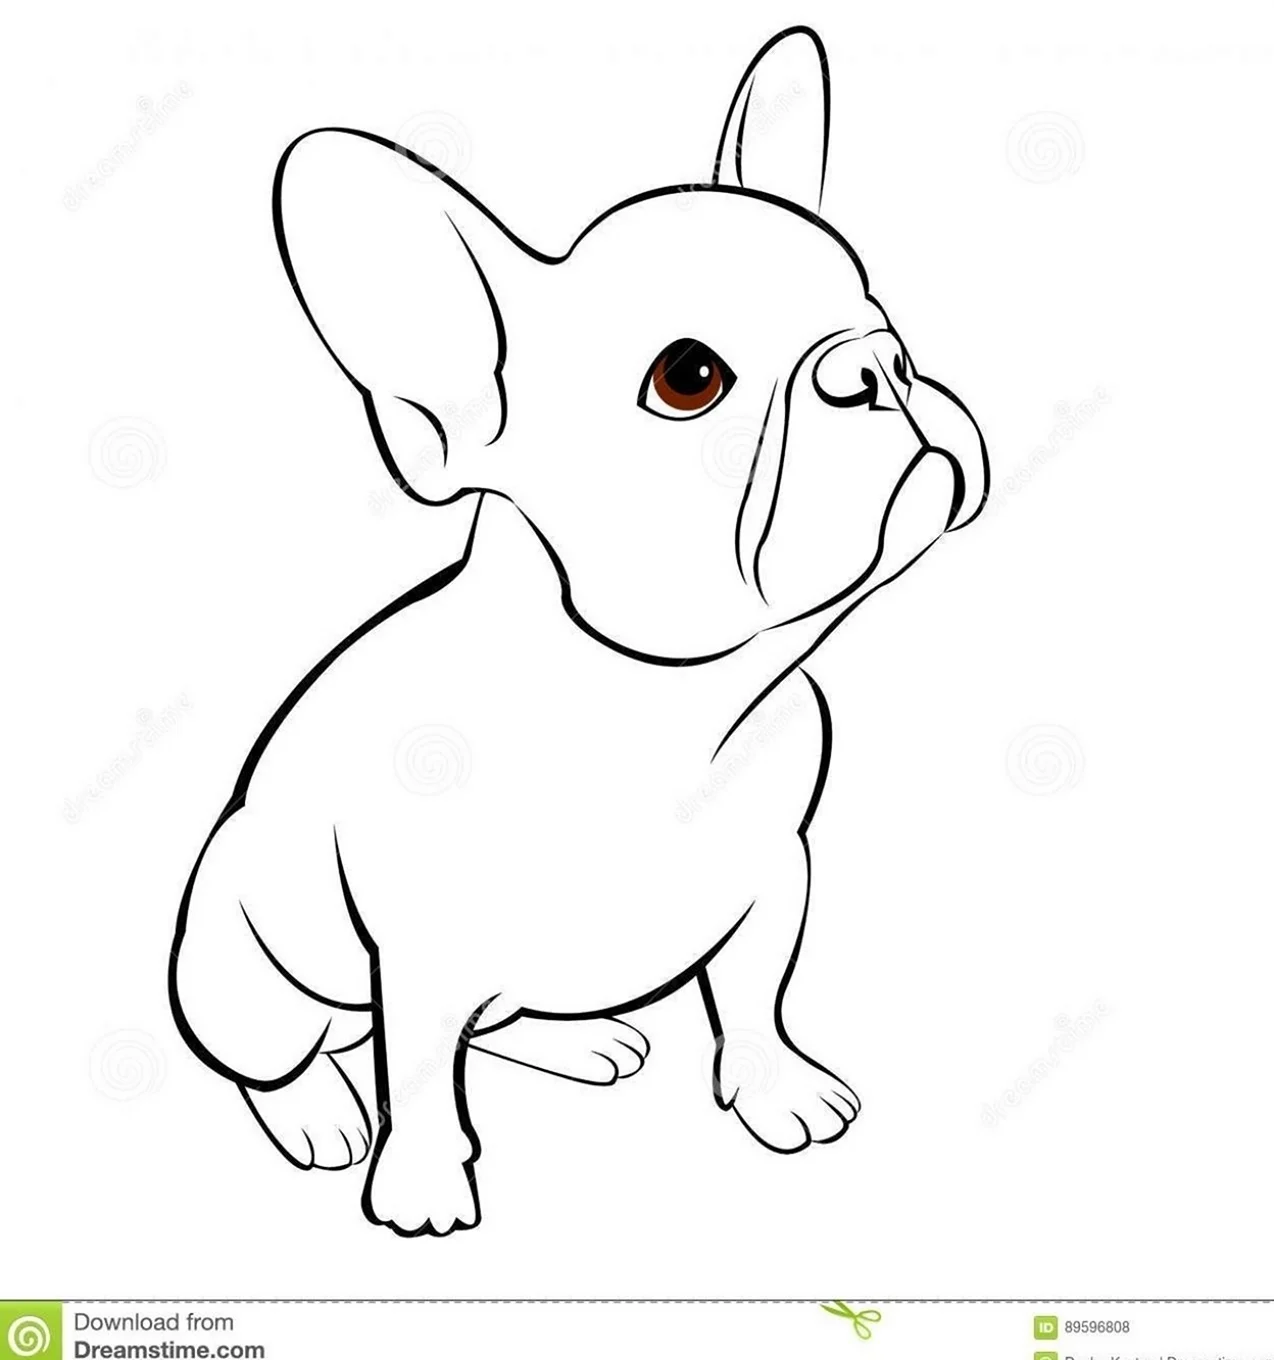 Раскраска собачка французский бульдог. Для срисовки